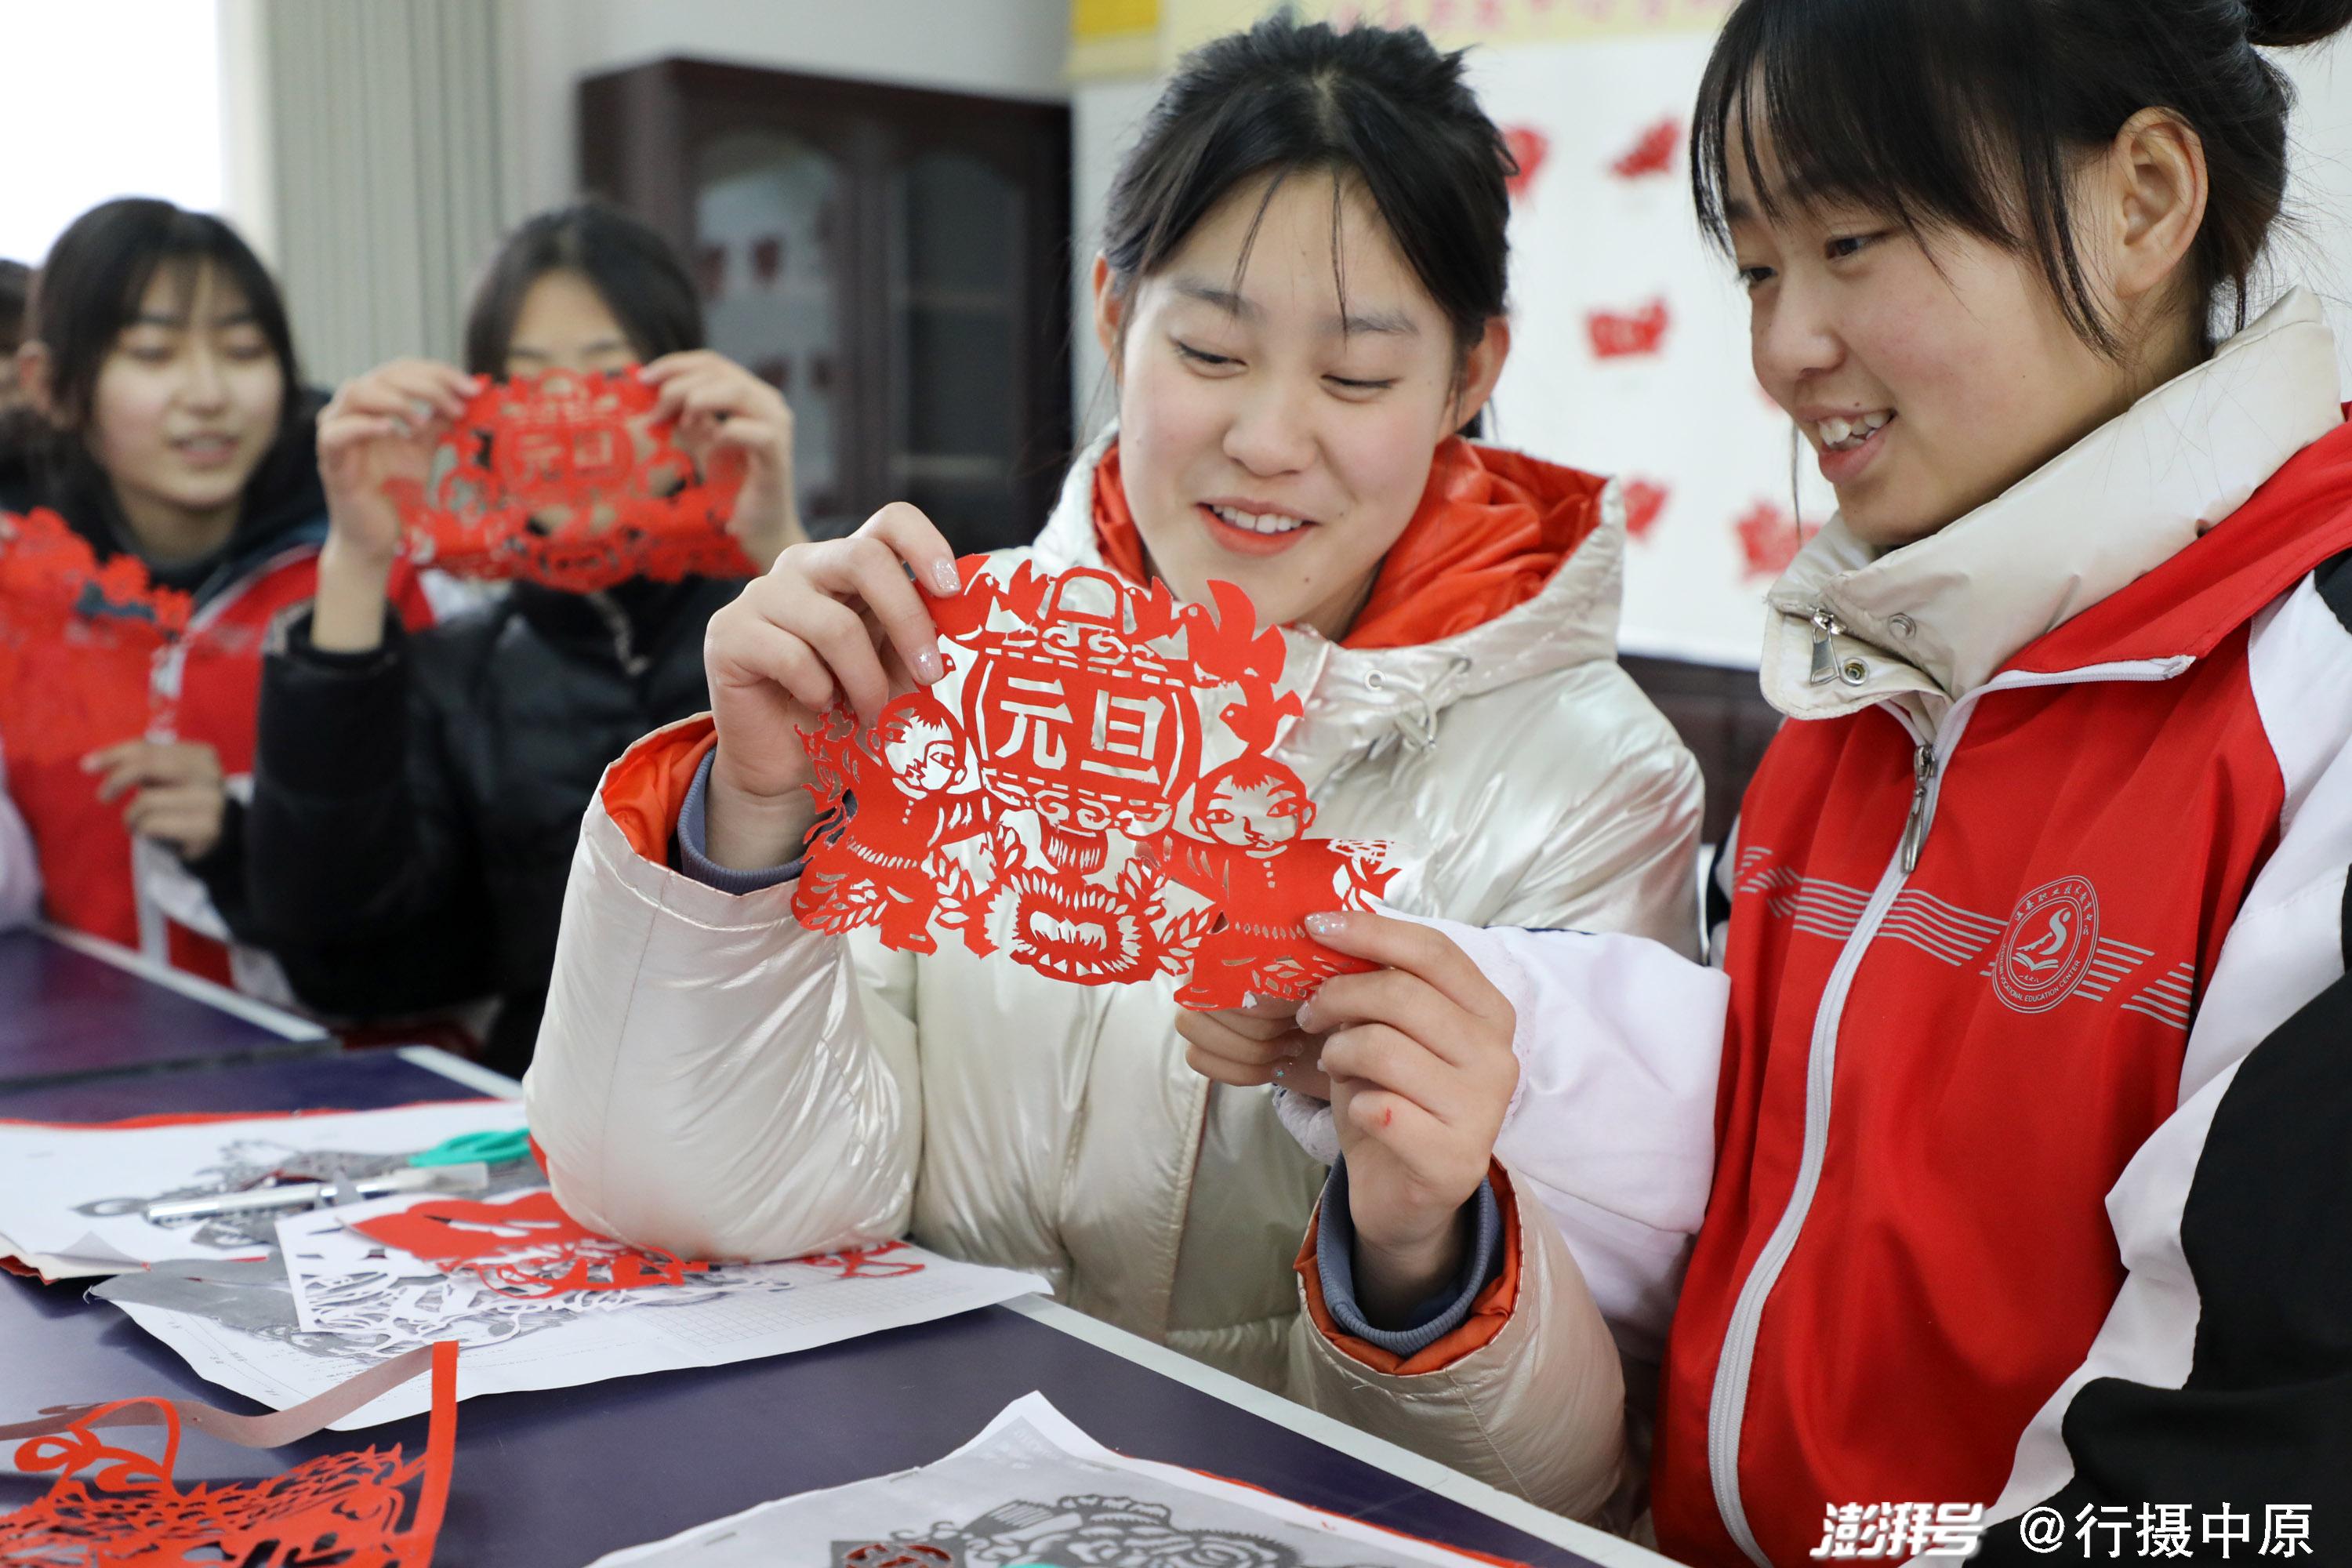 2021年12月31日,河南省焦作市温县职教中心剪纸社团的学生在交流剪纸